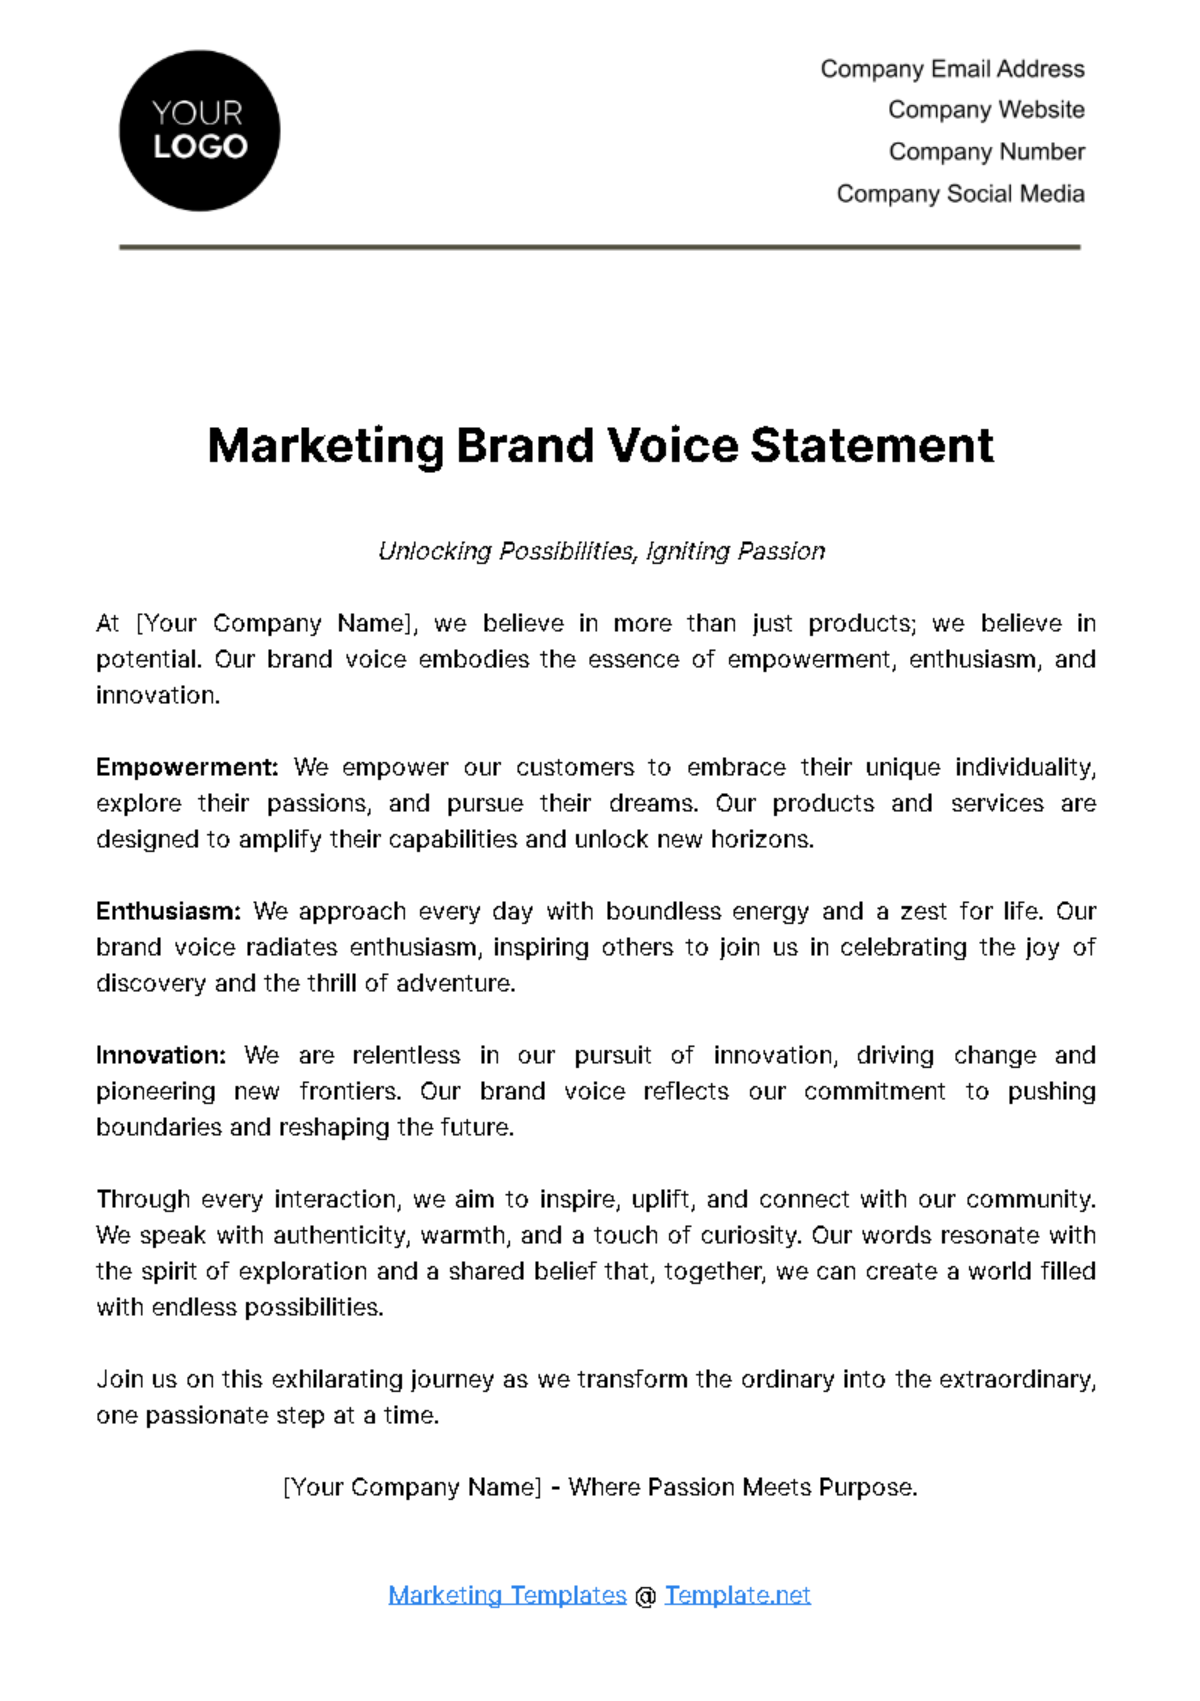 Marketing Brand Voice Statement Template